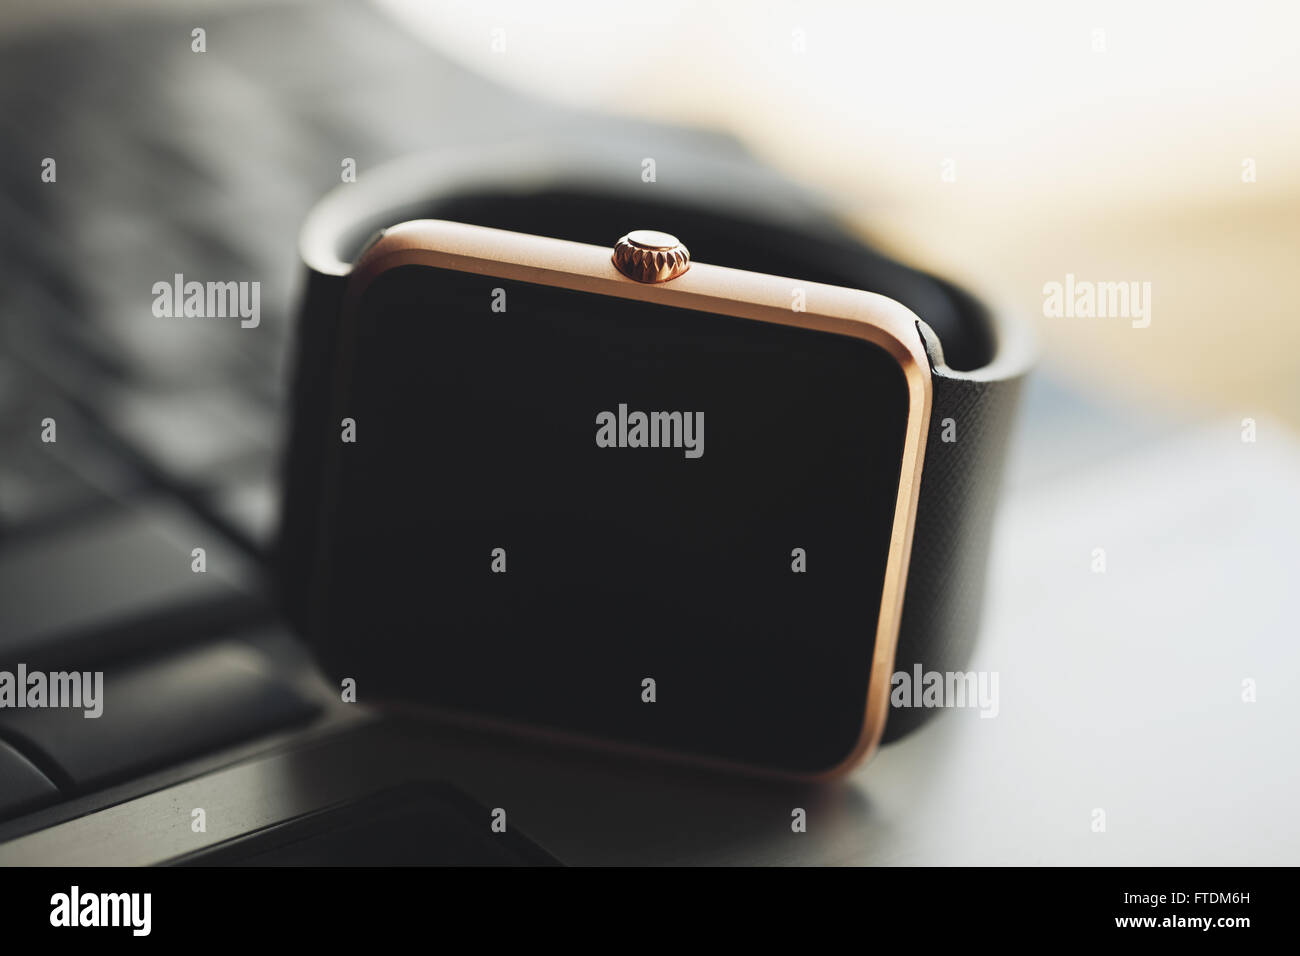 Moderne smart-Watch auf Notebook-Tastatur liegen. Makro-Foto, keine Modelle, Film Farben verblassen Stockfoto